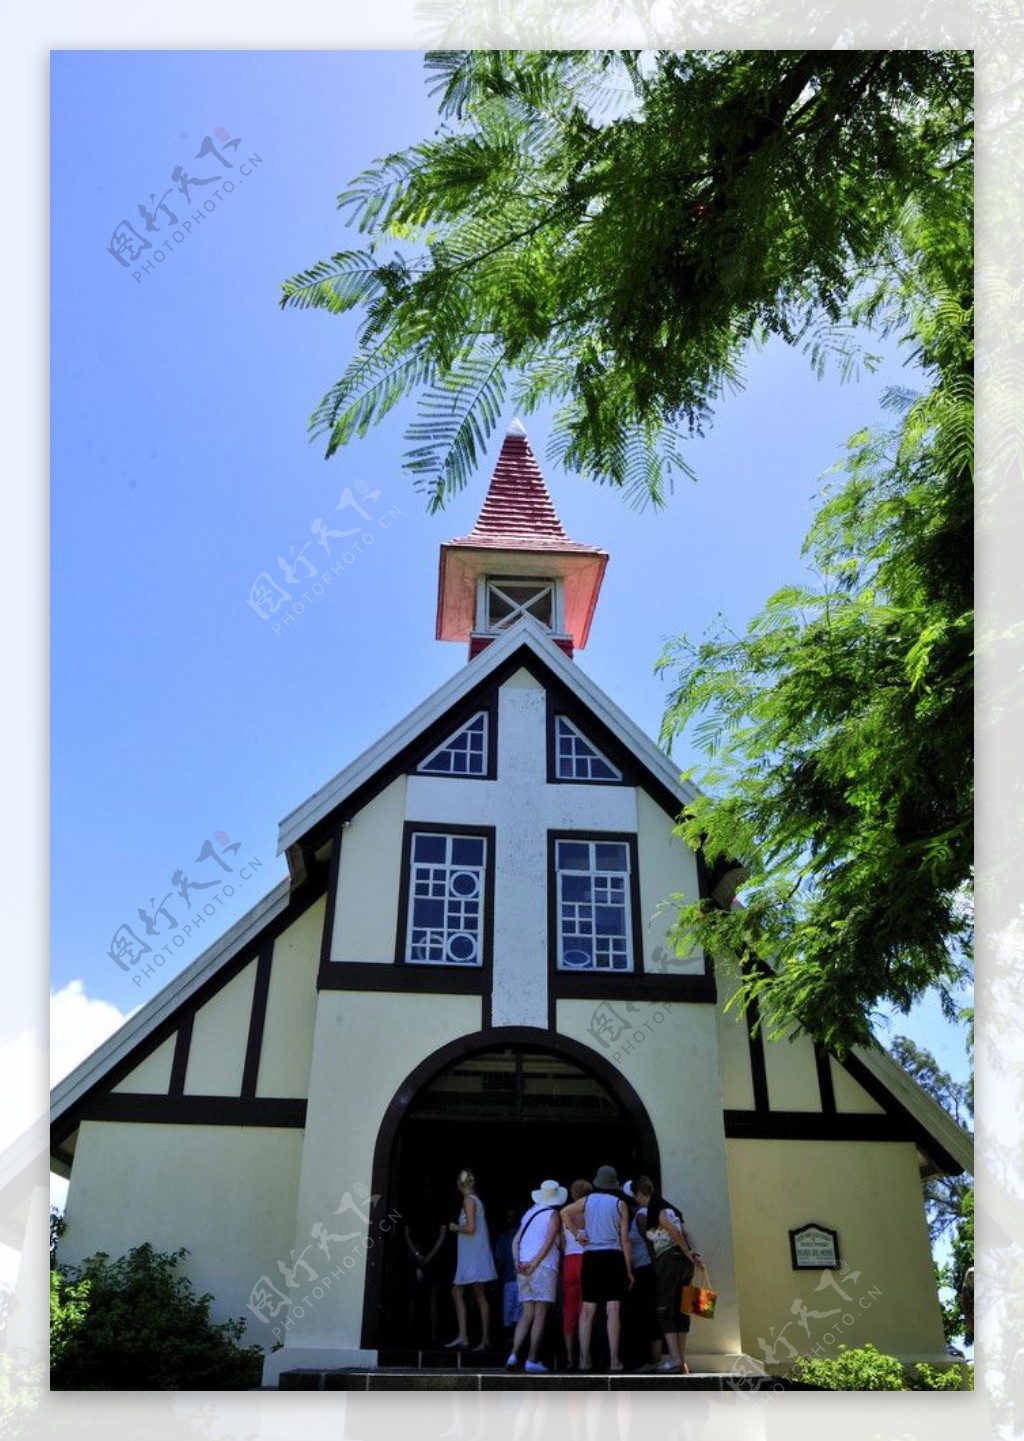 毛里求斯路易港红瓦耶稣教堂图片